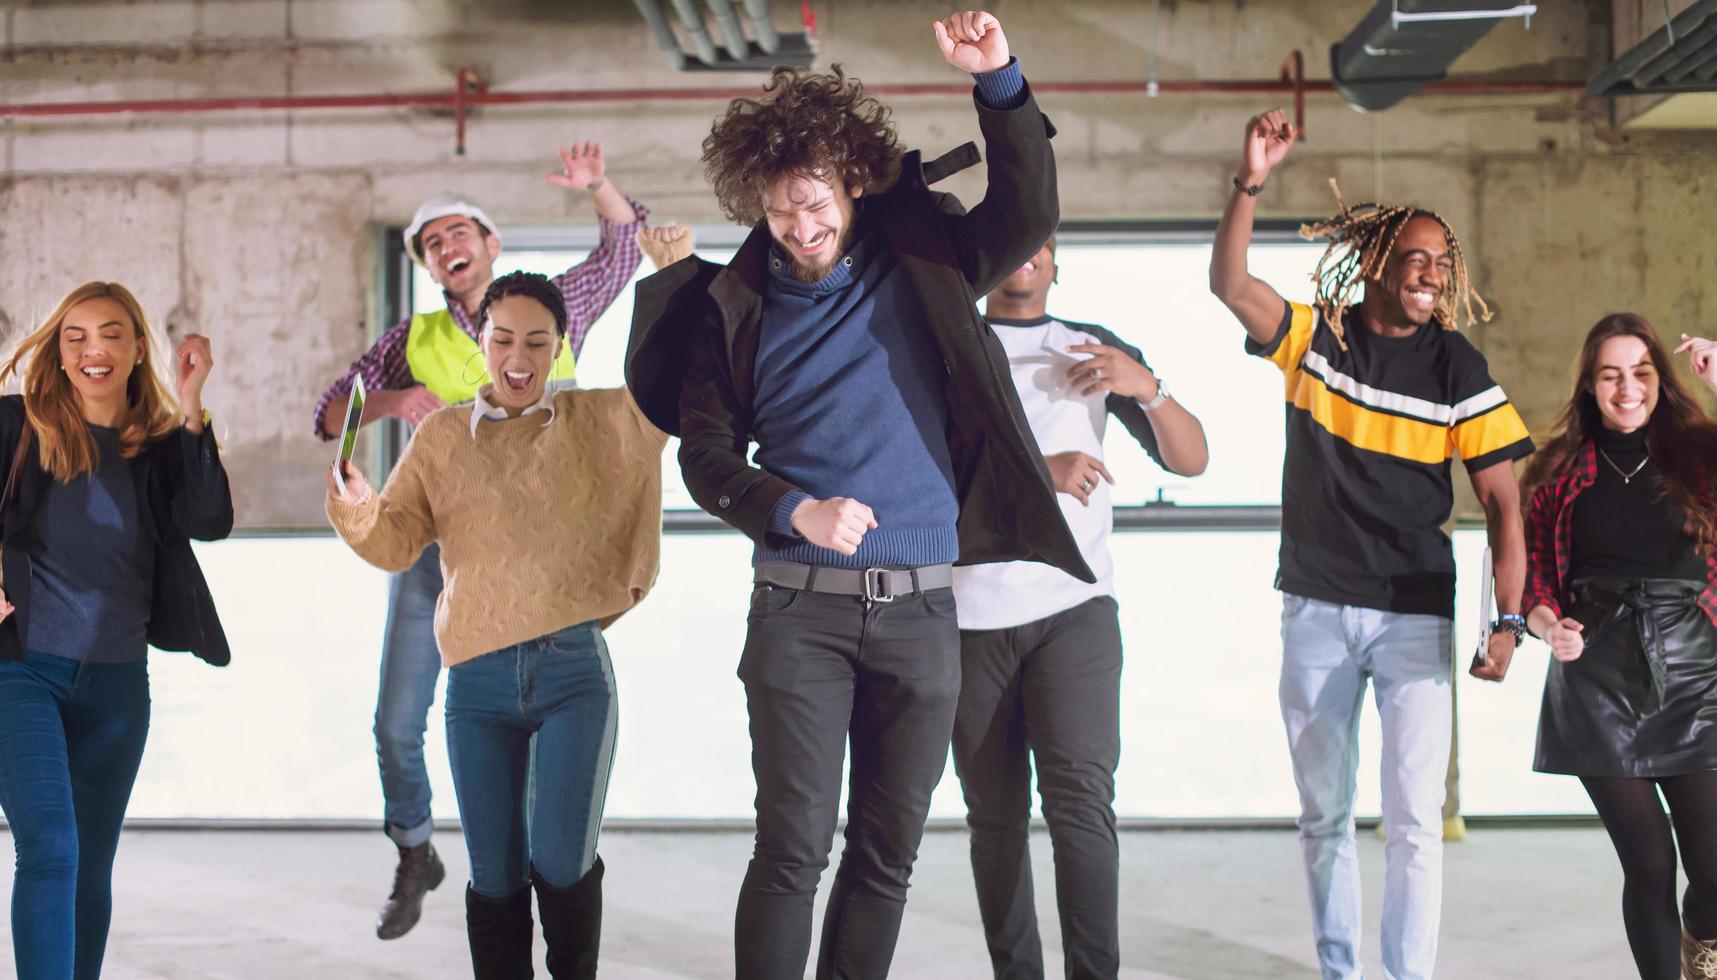 jóvenes empresarios multiétnicos bailando en una oficina de inicio sin terminar foto